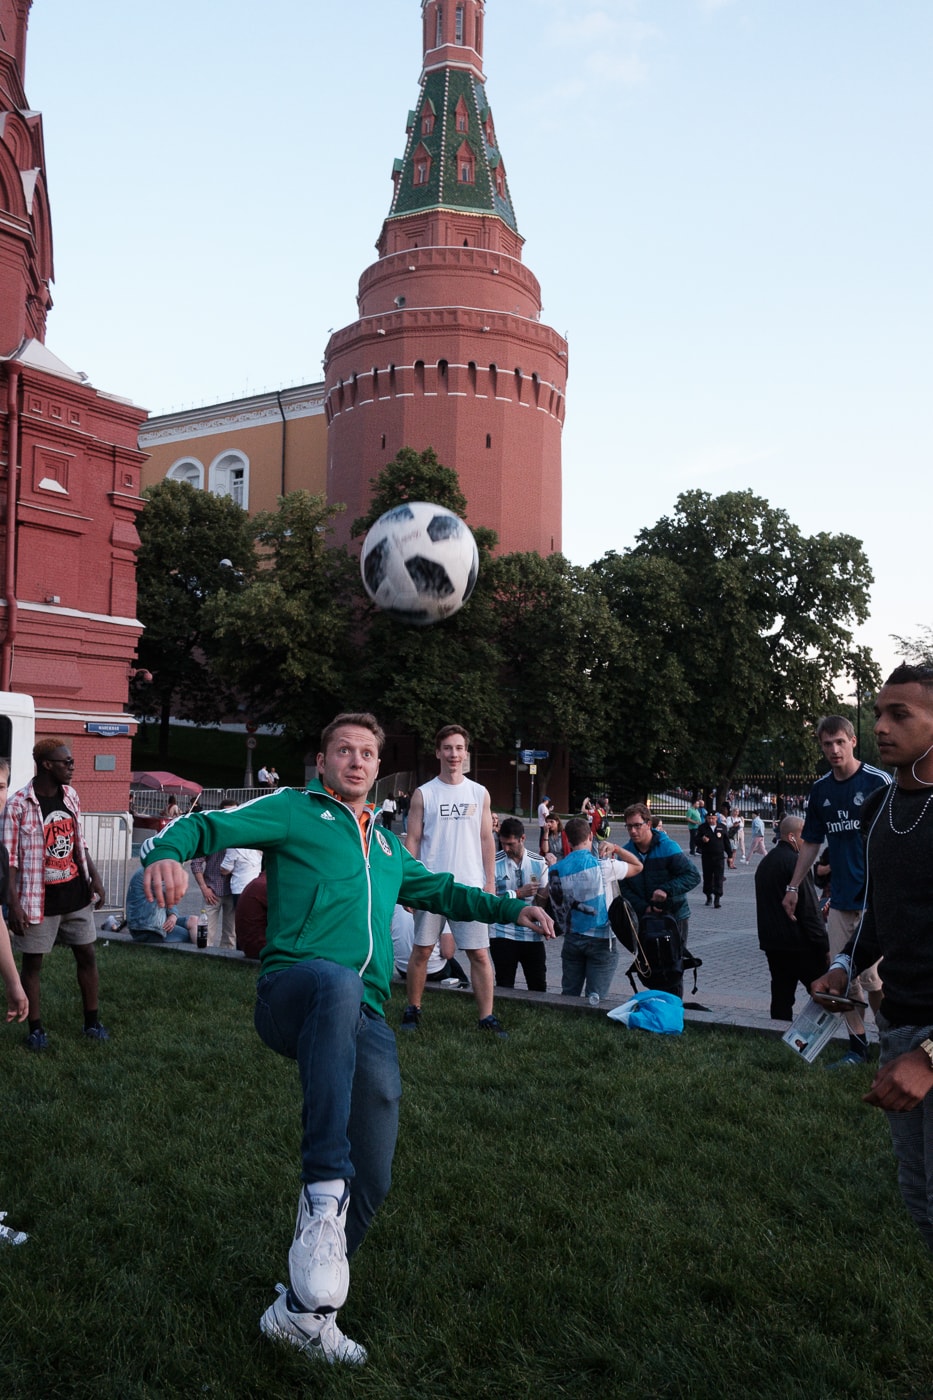 Streetsnaps 番外編：2018 FIFAワールドカップ ロシアよりモスクワの様子をお届け フットボールの祭典の開催地となったロシアの首都は開幕から休む間もなく終日お祭り騒ぎ ストリートスナップの番外編企画として、本稿では6月14日（木）より開幕した「2018 FIFAワールドカップ ロシア」より、モスクワの様子をお届け。開催国であるロシアが中東の雄サウジアラビアに5-0の快勝劇を披露したことで、首都のボルデージは一気に加熱。また、優勝候補の一角であるドイツをメキシコが下した一戦では、同国の首都メキシコシティで“人為的な地震”が観測されるほど、世界は今、4年に一度のフットボールの祭典に全視線が注がれている。  マネージュ広場やニコルスカヤ通りで敢行したストリートスナップは、試合毎に景色が変わっていく。南米の国家の対戦がある際にはまるでお祭りかのごとく陽気な雰囲気に包まれる一方、フットボールを見る目が肥えたヨーロッパの強豪国が登場すれば、人々がスタジアムさながらのテンションで一喜一憂する。  サッカー好きか否かに問わず、是非上のフォトギャラリーからフットボールに酔いしれるモスクワの様子をチェックしてみてほしい。  また、勝色を纏う選手たちの“覚悟”を収録した応援への士気を高める日本代表の特別ドキュメンタリー“勝色 THE NEW STORY 3”もお見逃しなく。